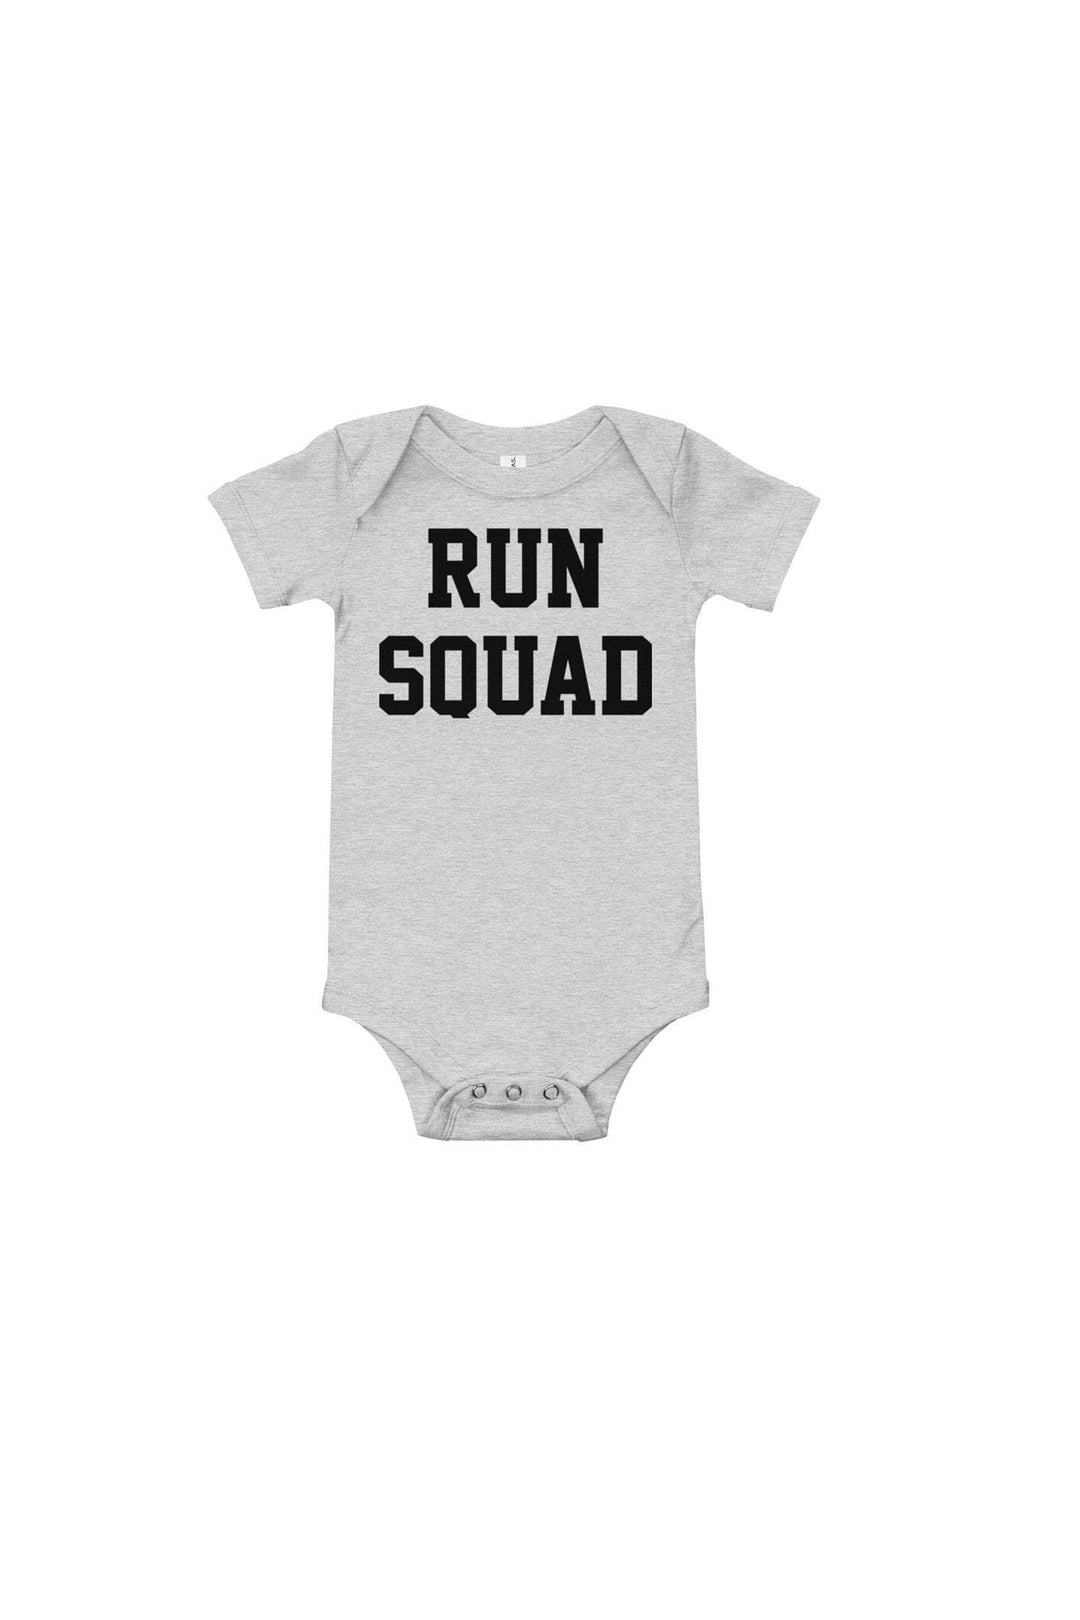 Sarah Marie Design Studio Kids Run Squad Infant Bodysuit